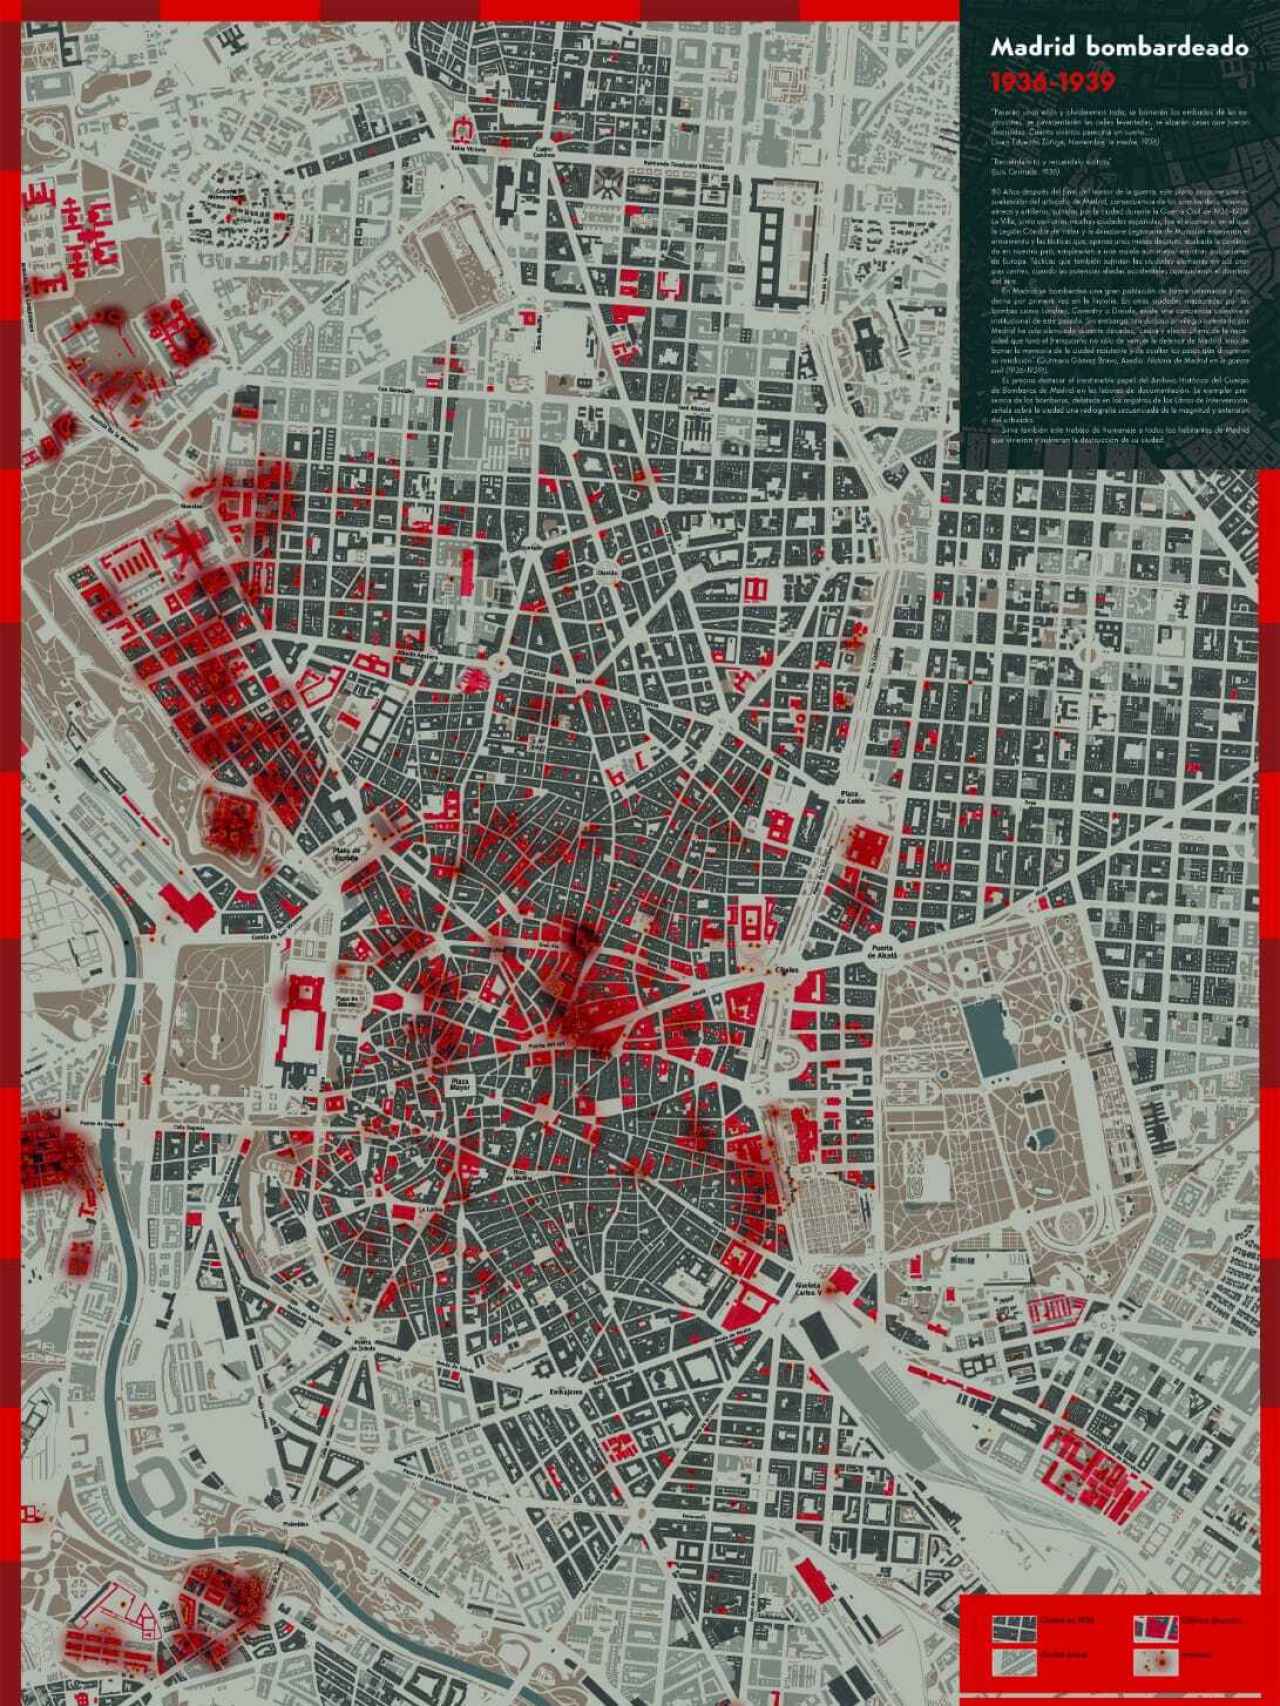 Mapa de Madrid bombardeado 1936-1937.